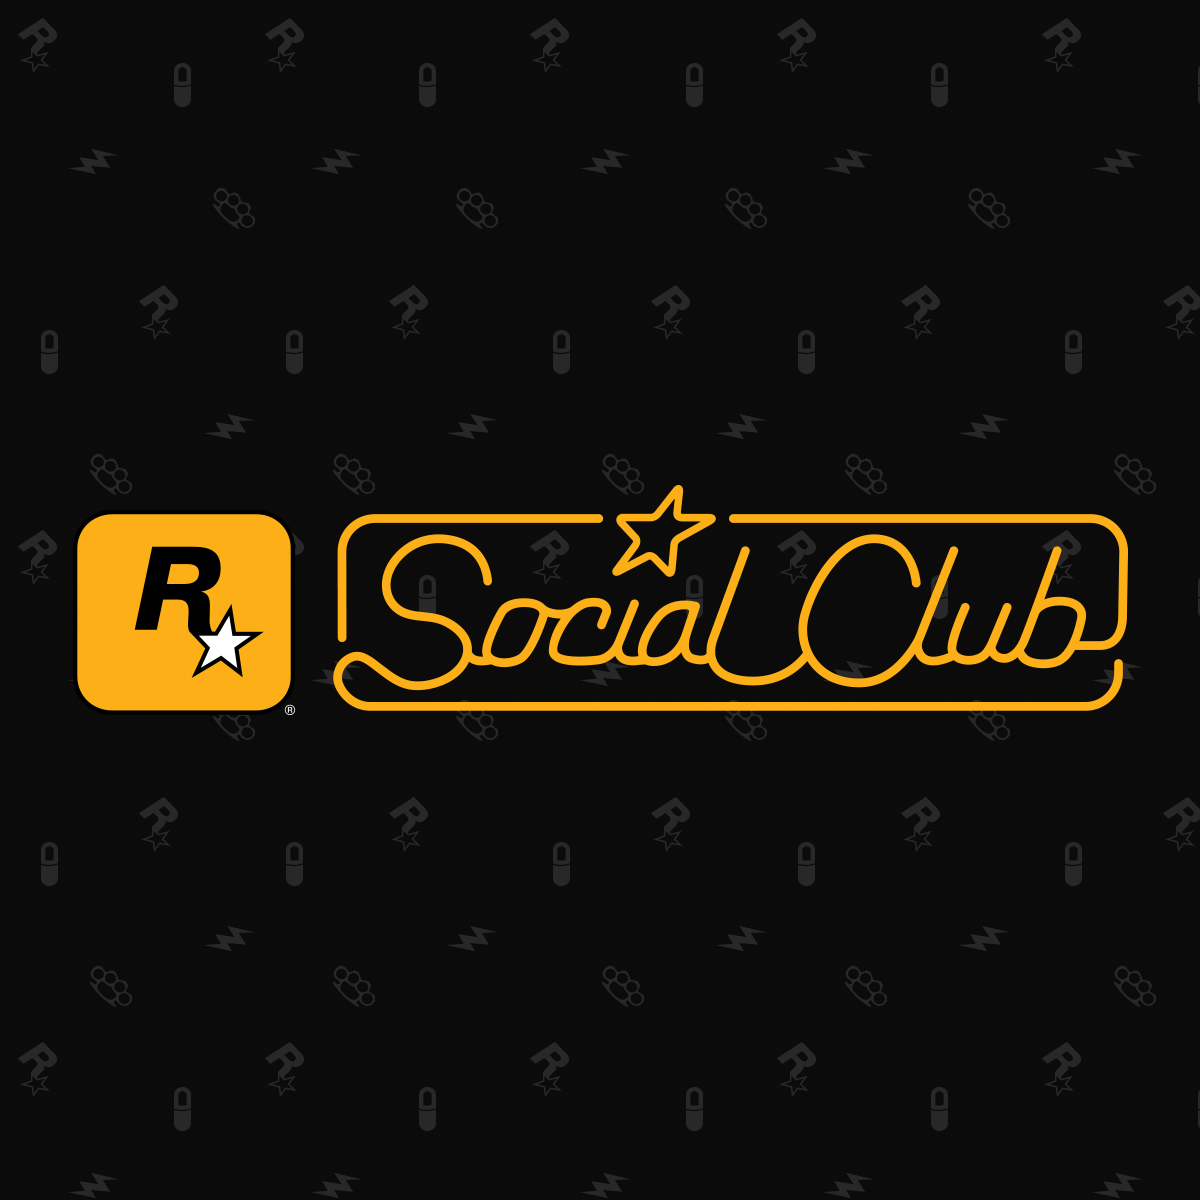 Rockstar Social Club Digitakey Llc